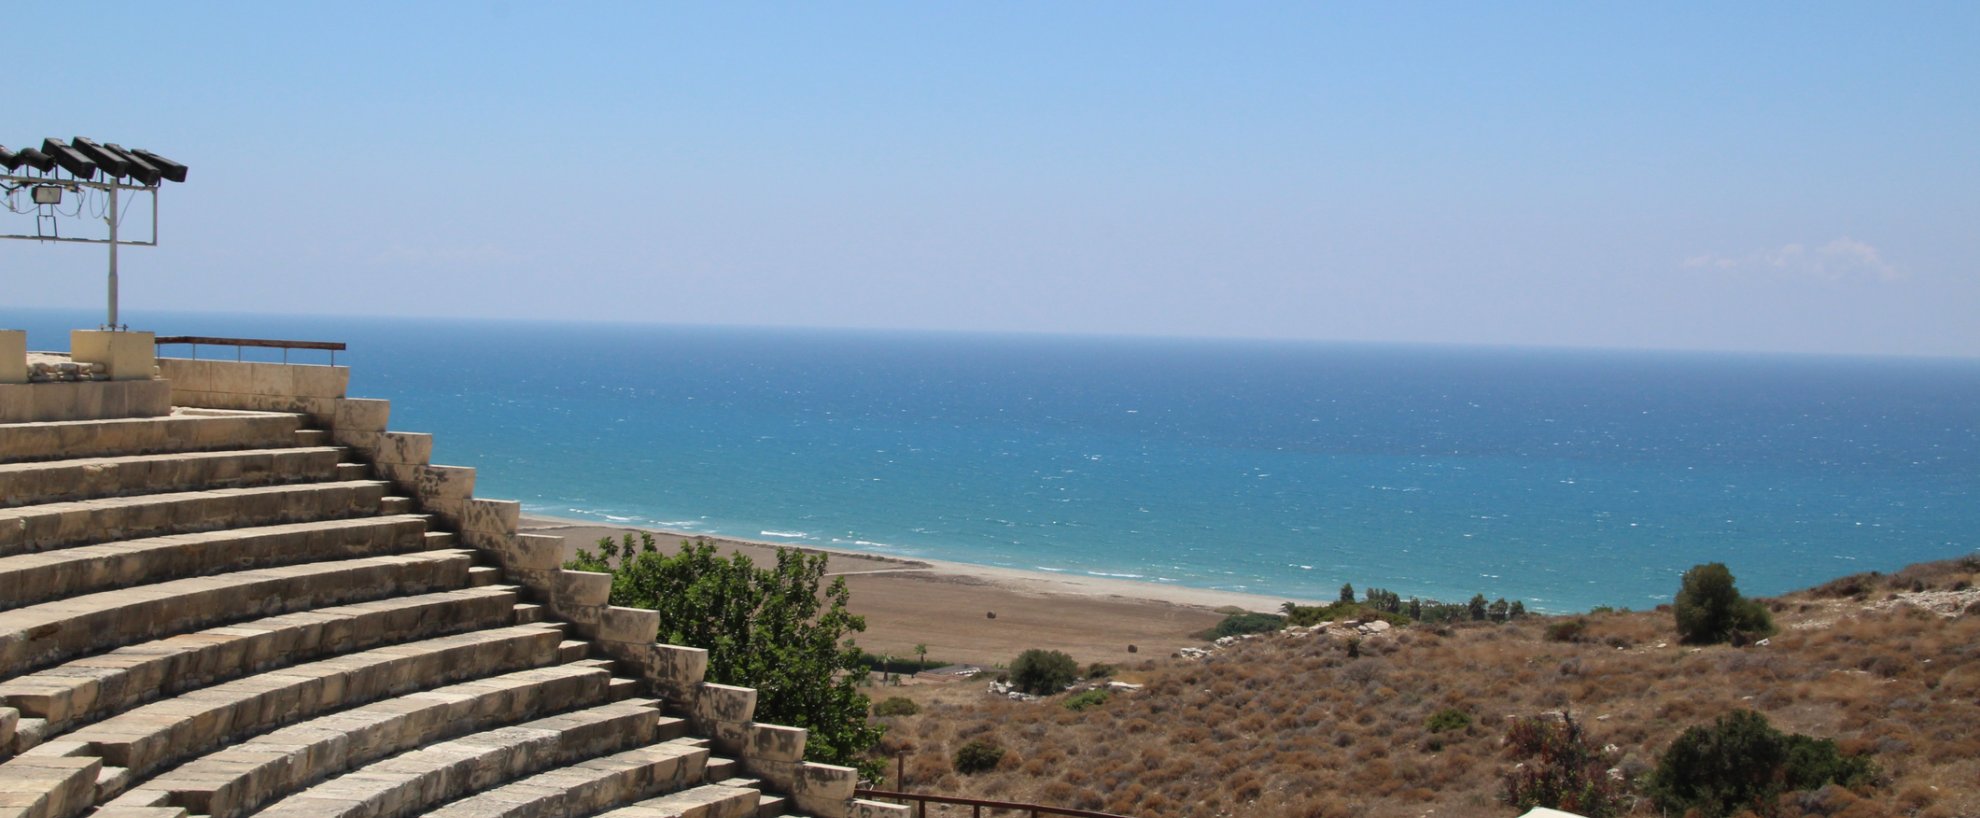 Tui reisen zypern zum kennenlernen